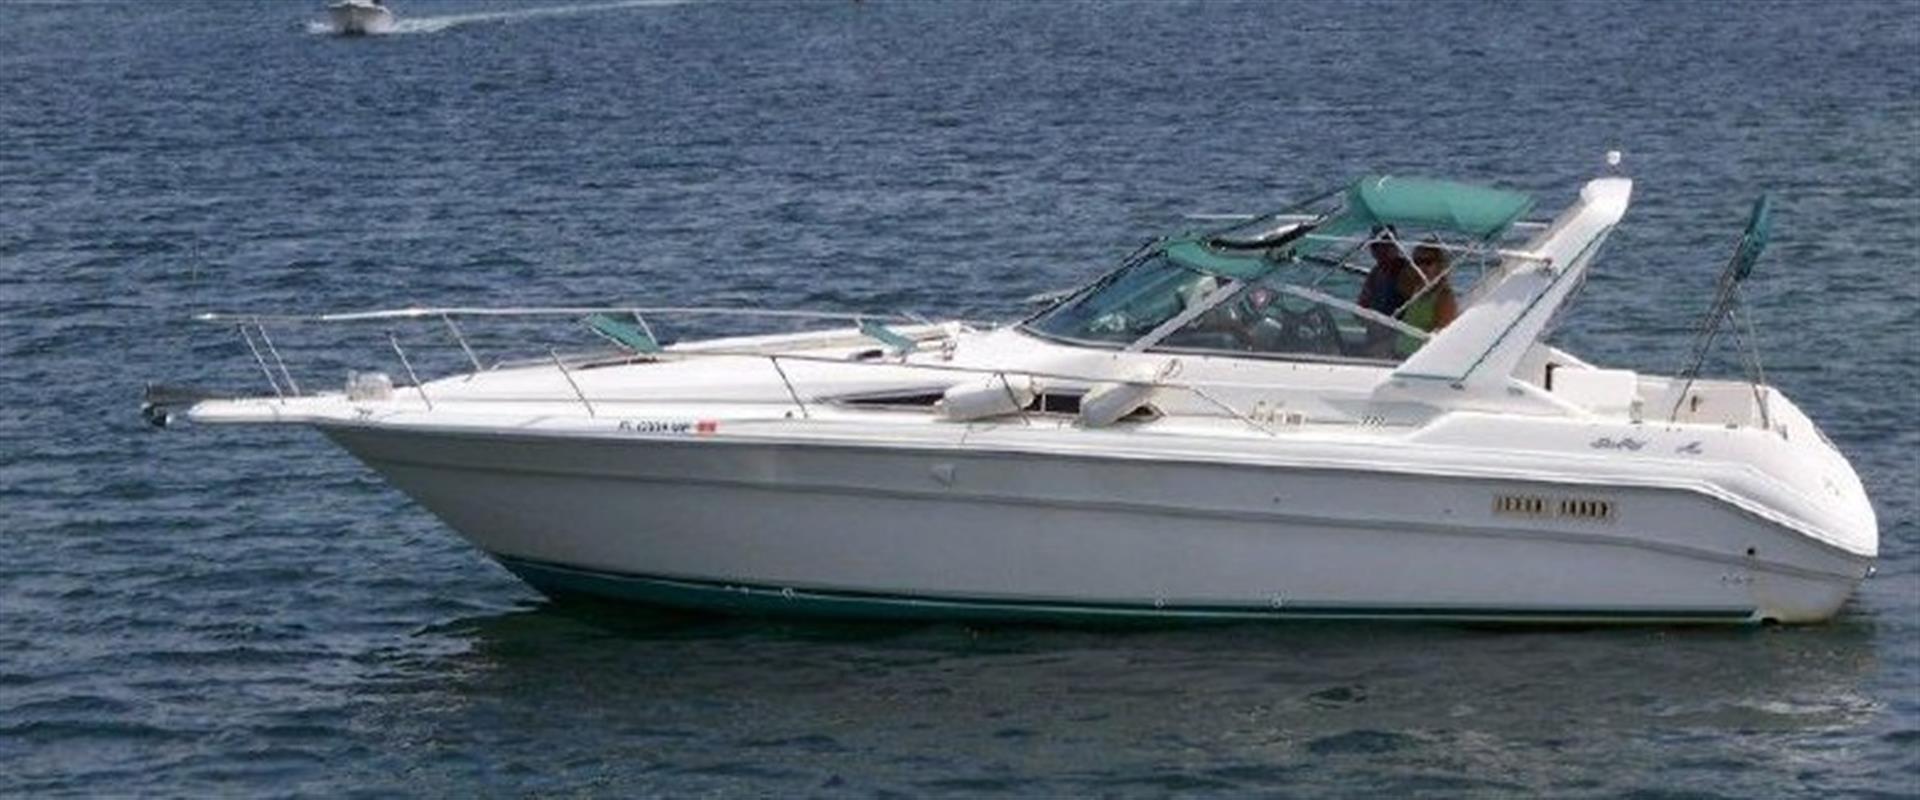 Sea Ray 330 Express Cruiser, Delray Beach